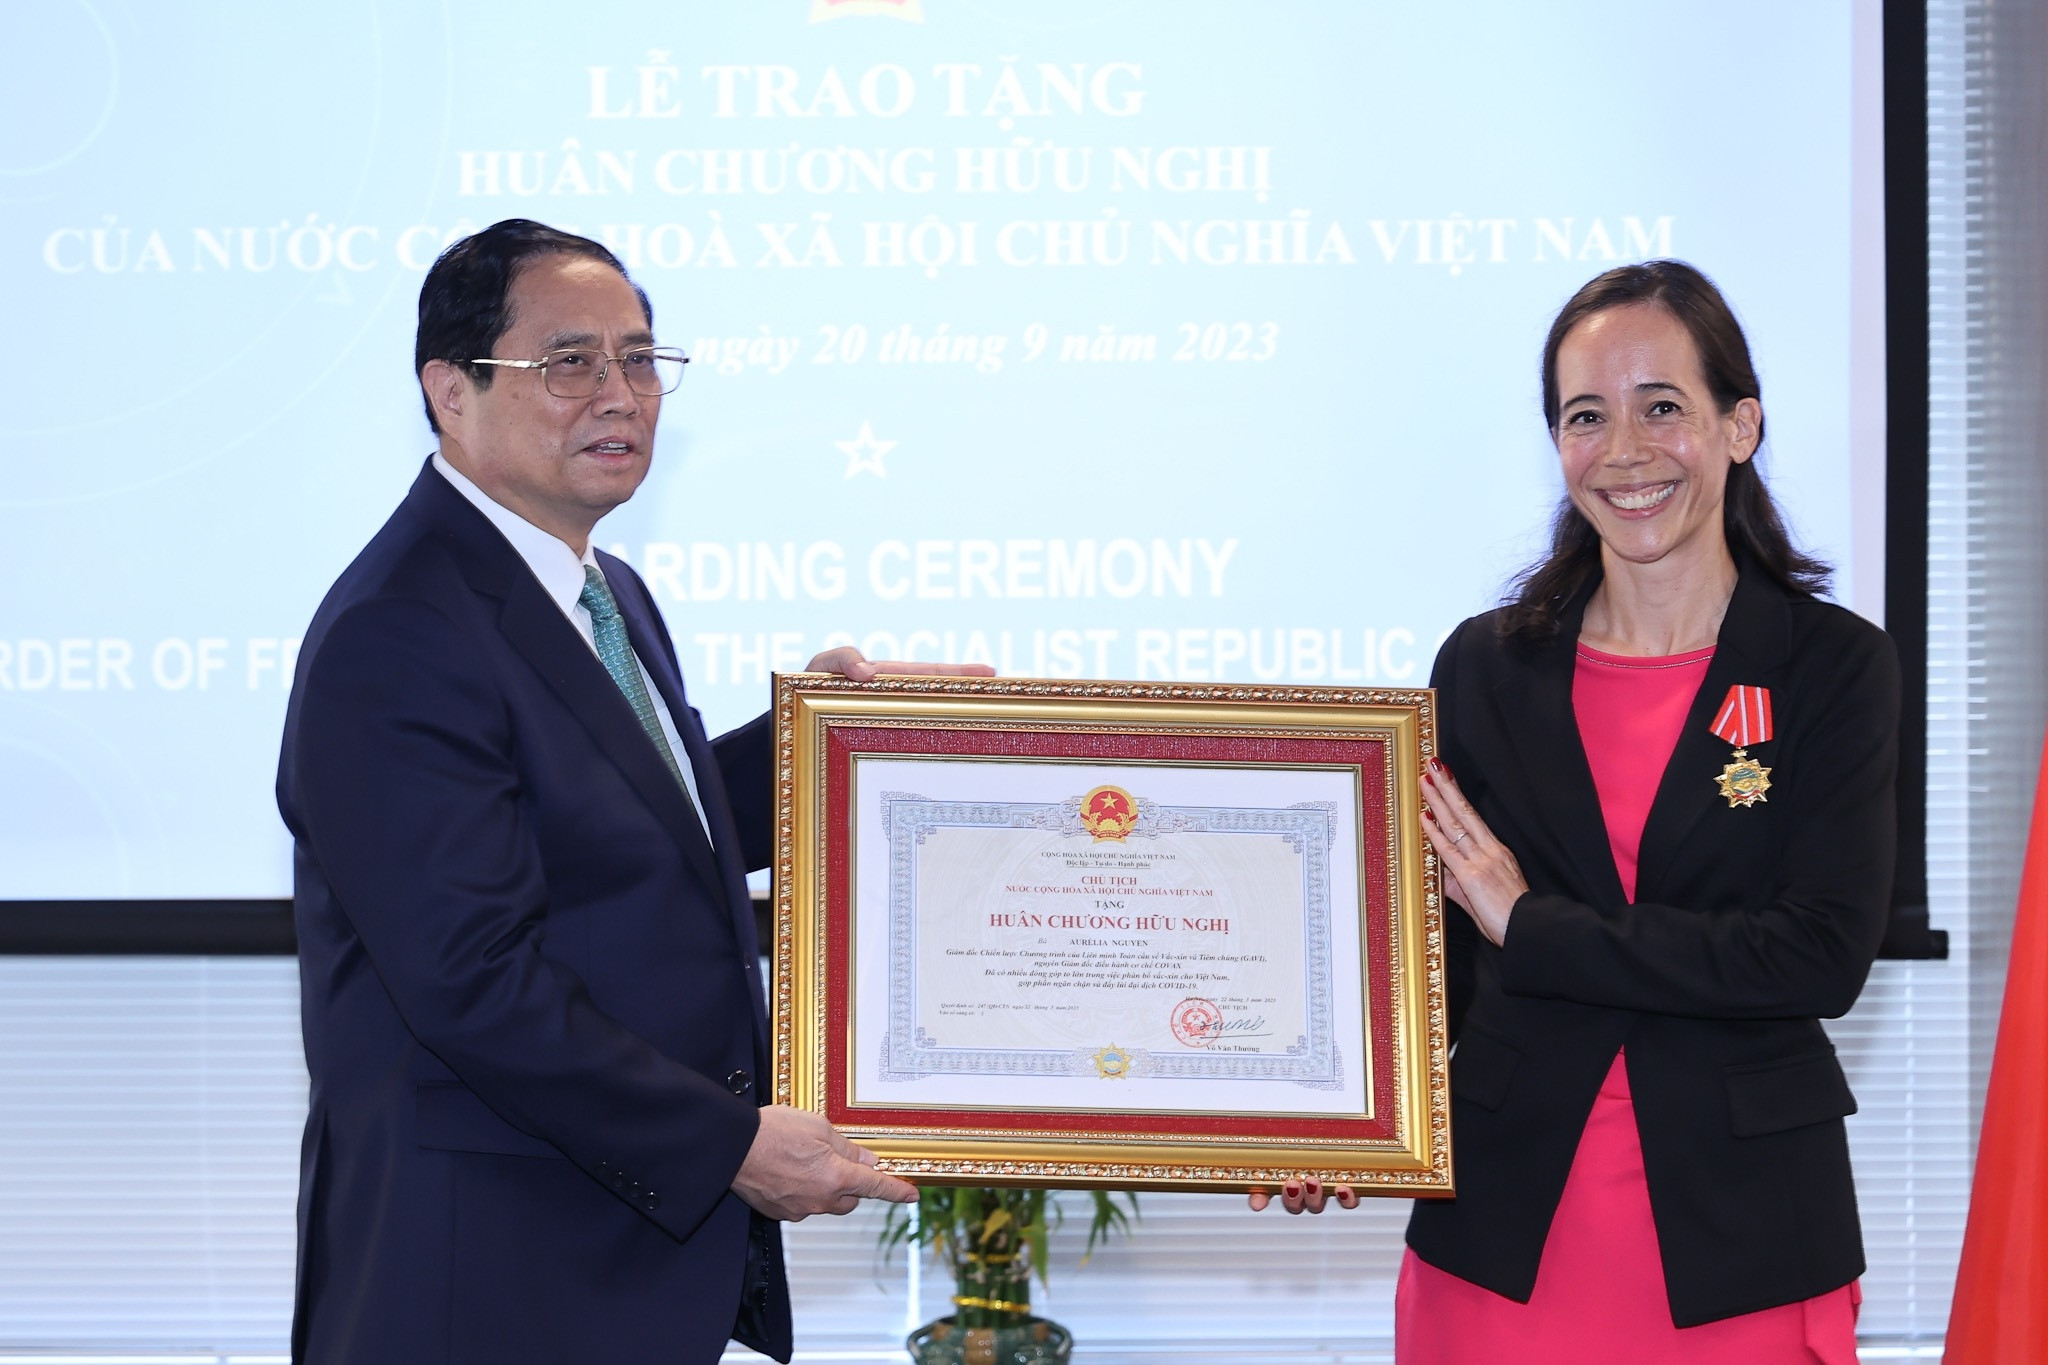 Thủ tướng trao Huân chương Hữu nghị cho bà Aurélia Nguyễn tại New York